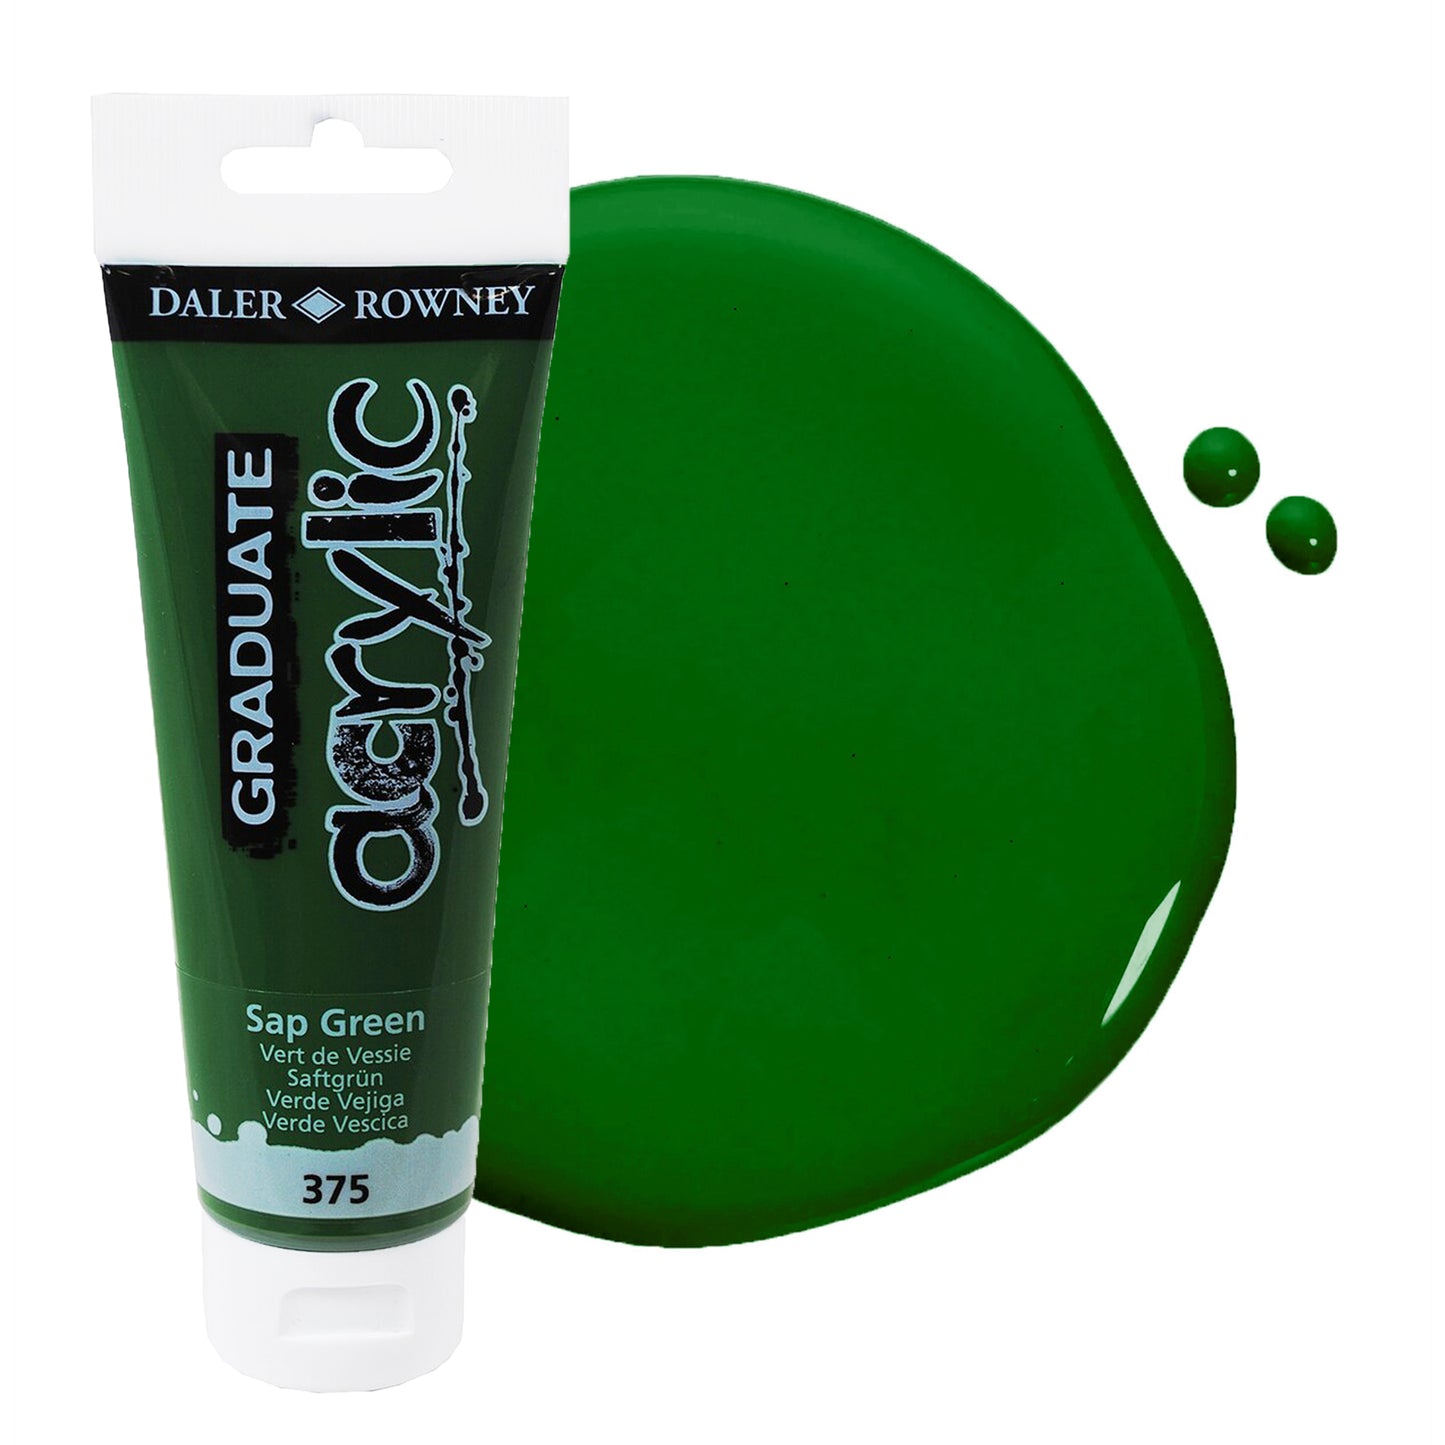 Daler & Rowney beginner's sap green acrylic paint tube